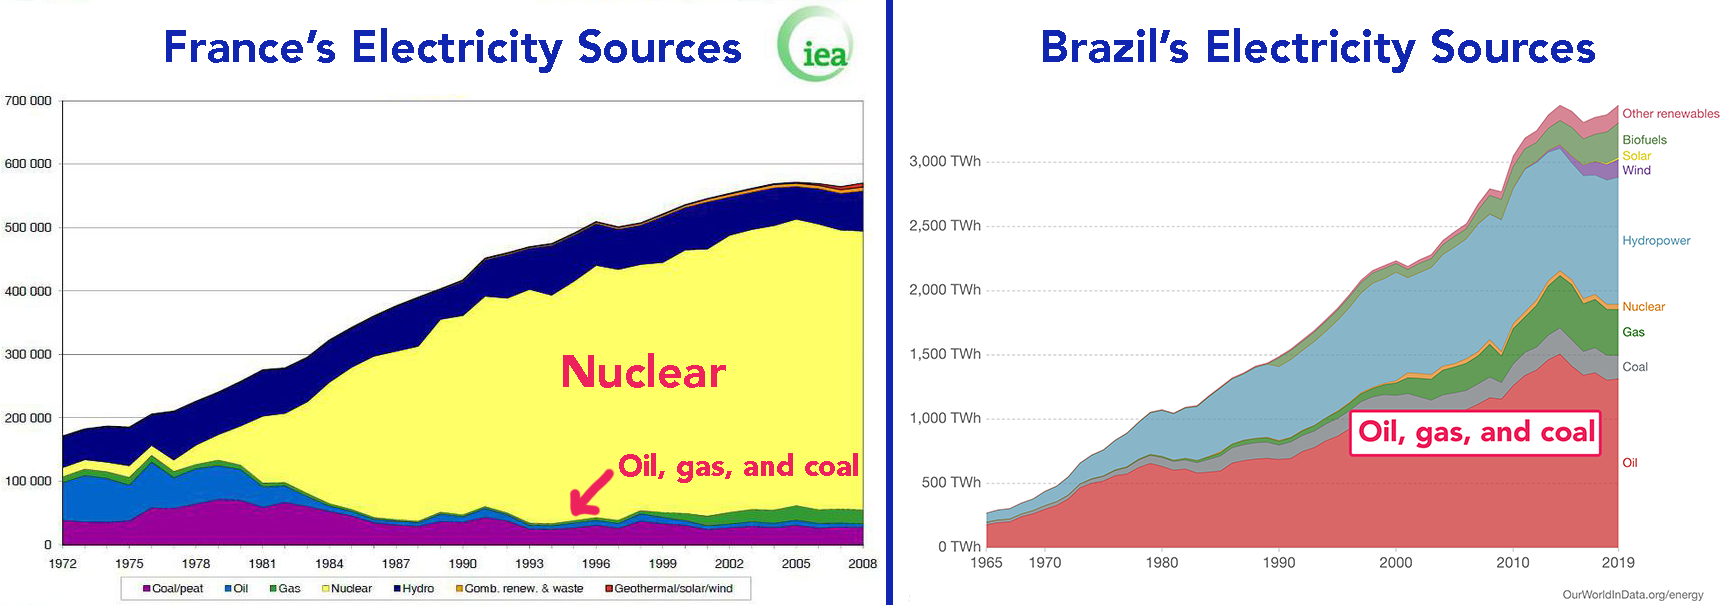 France vs Brazil's Electricity Sources